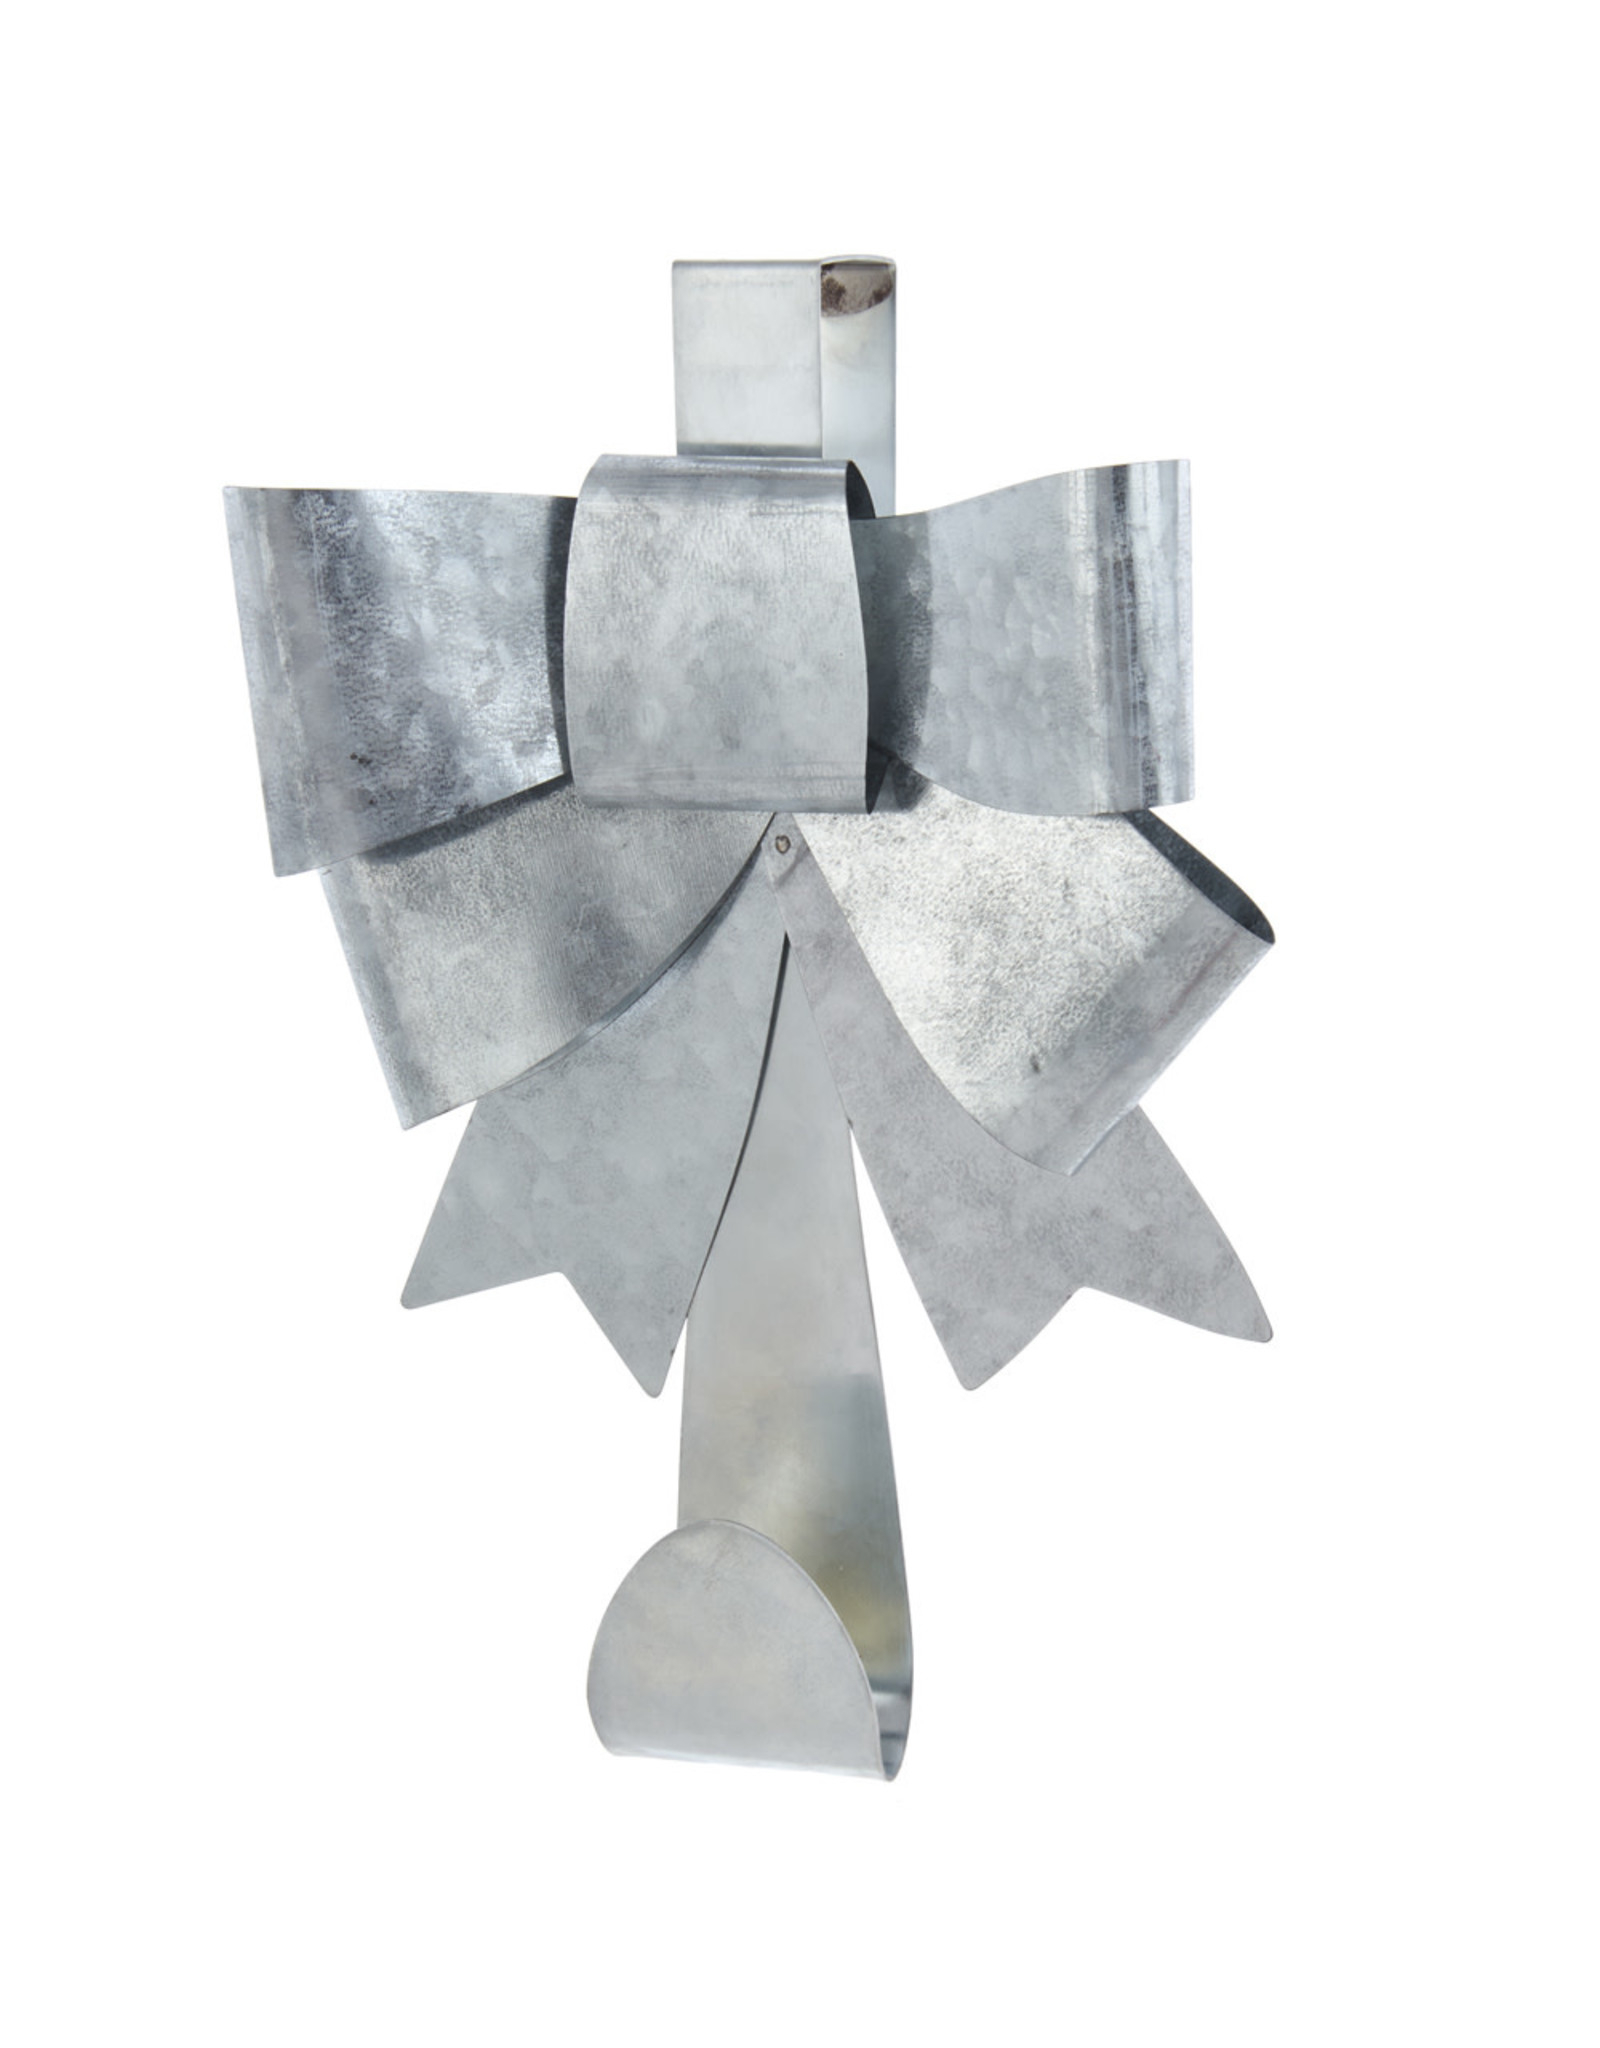 Kurt Adler Metal Silver Bow Wreath Hanger Door Wreath Holder